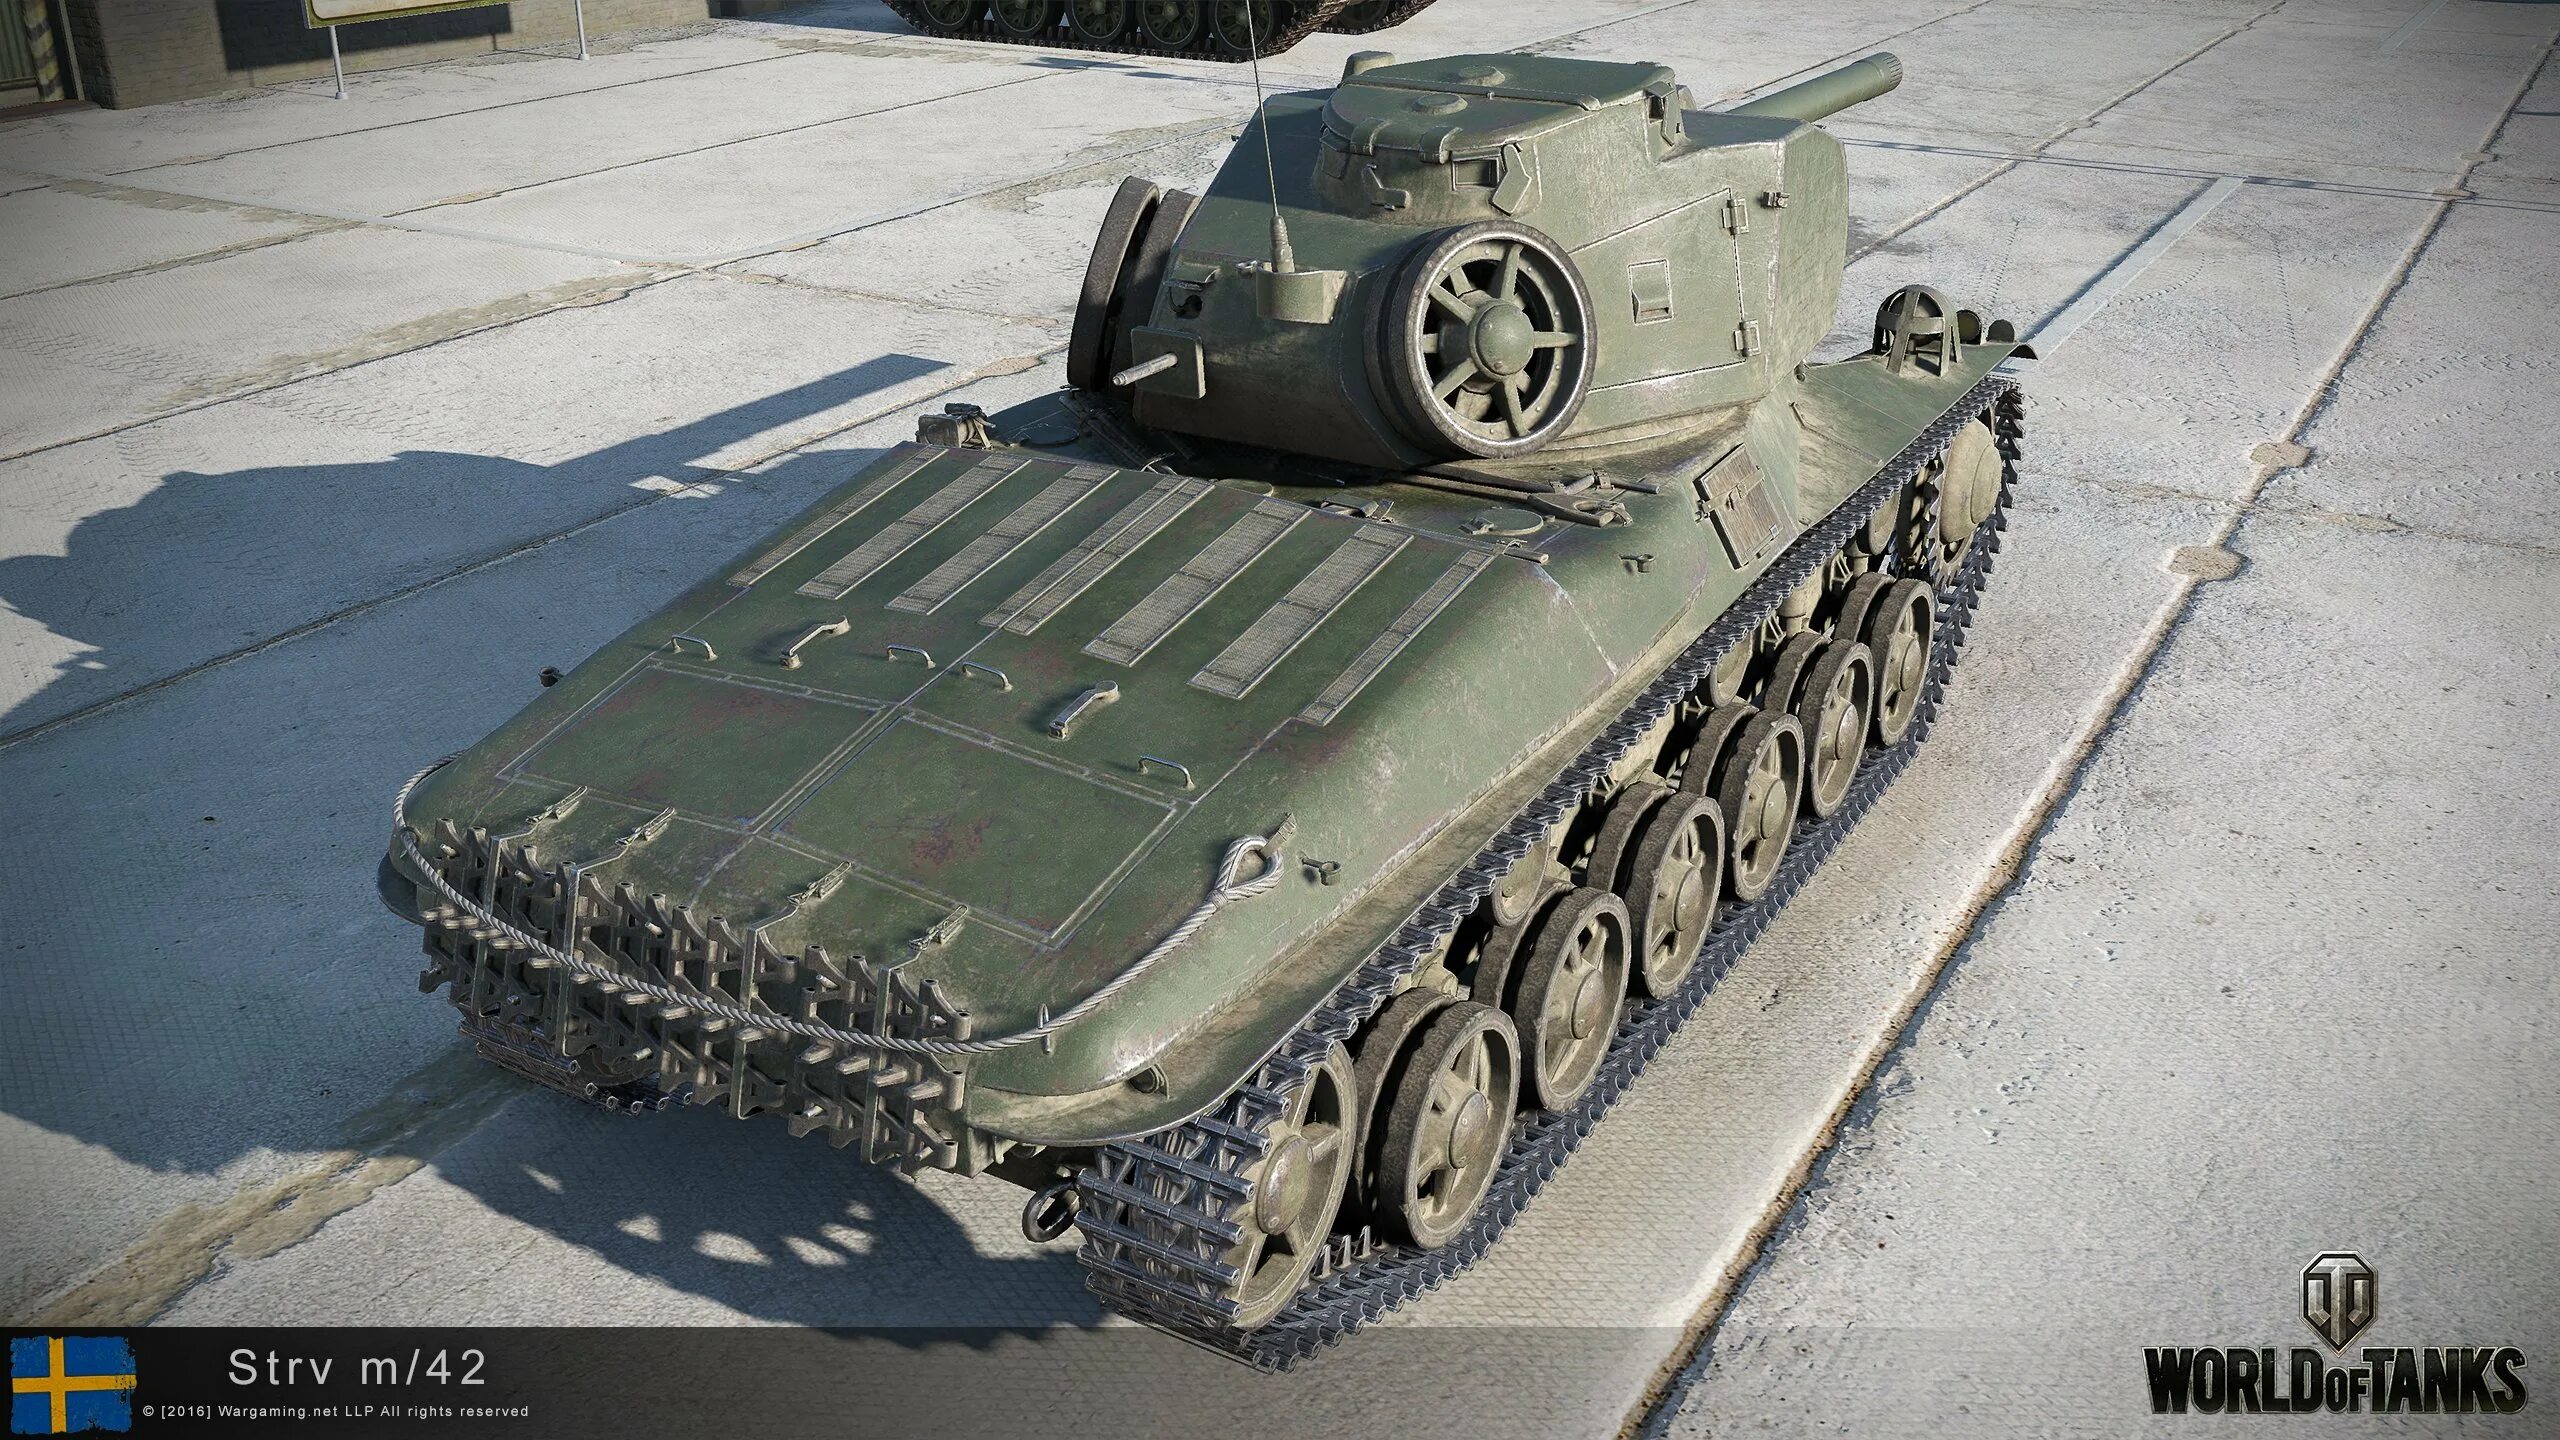 M 42 24. Strv m/42. Стрв м 42. Strv 74. Шведский танк стрв m42/57.